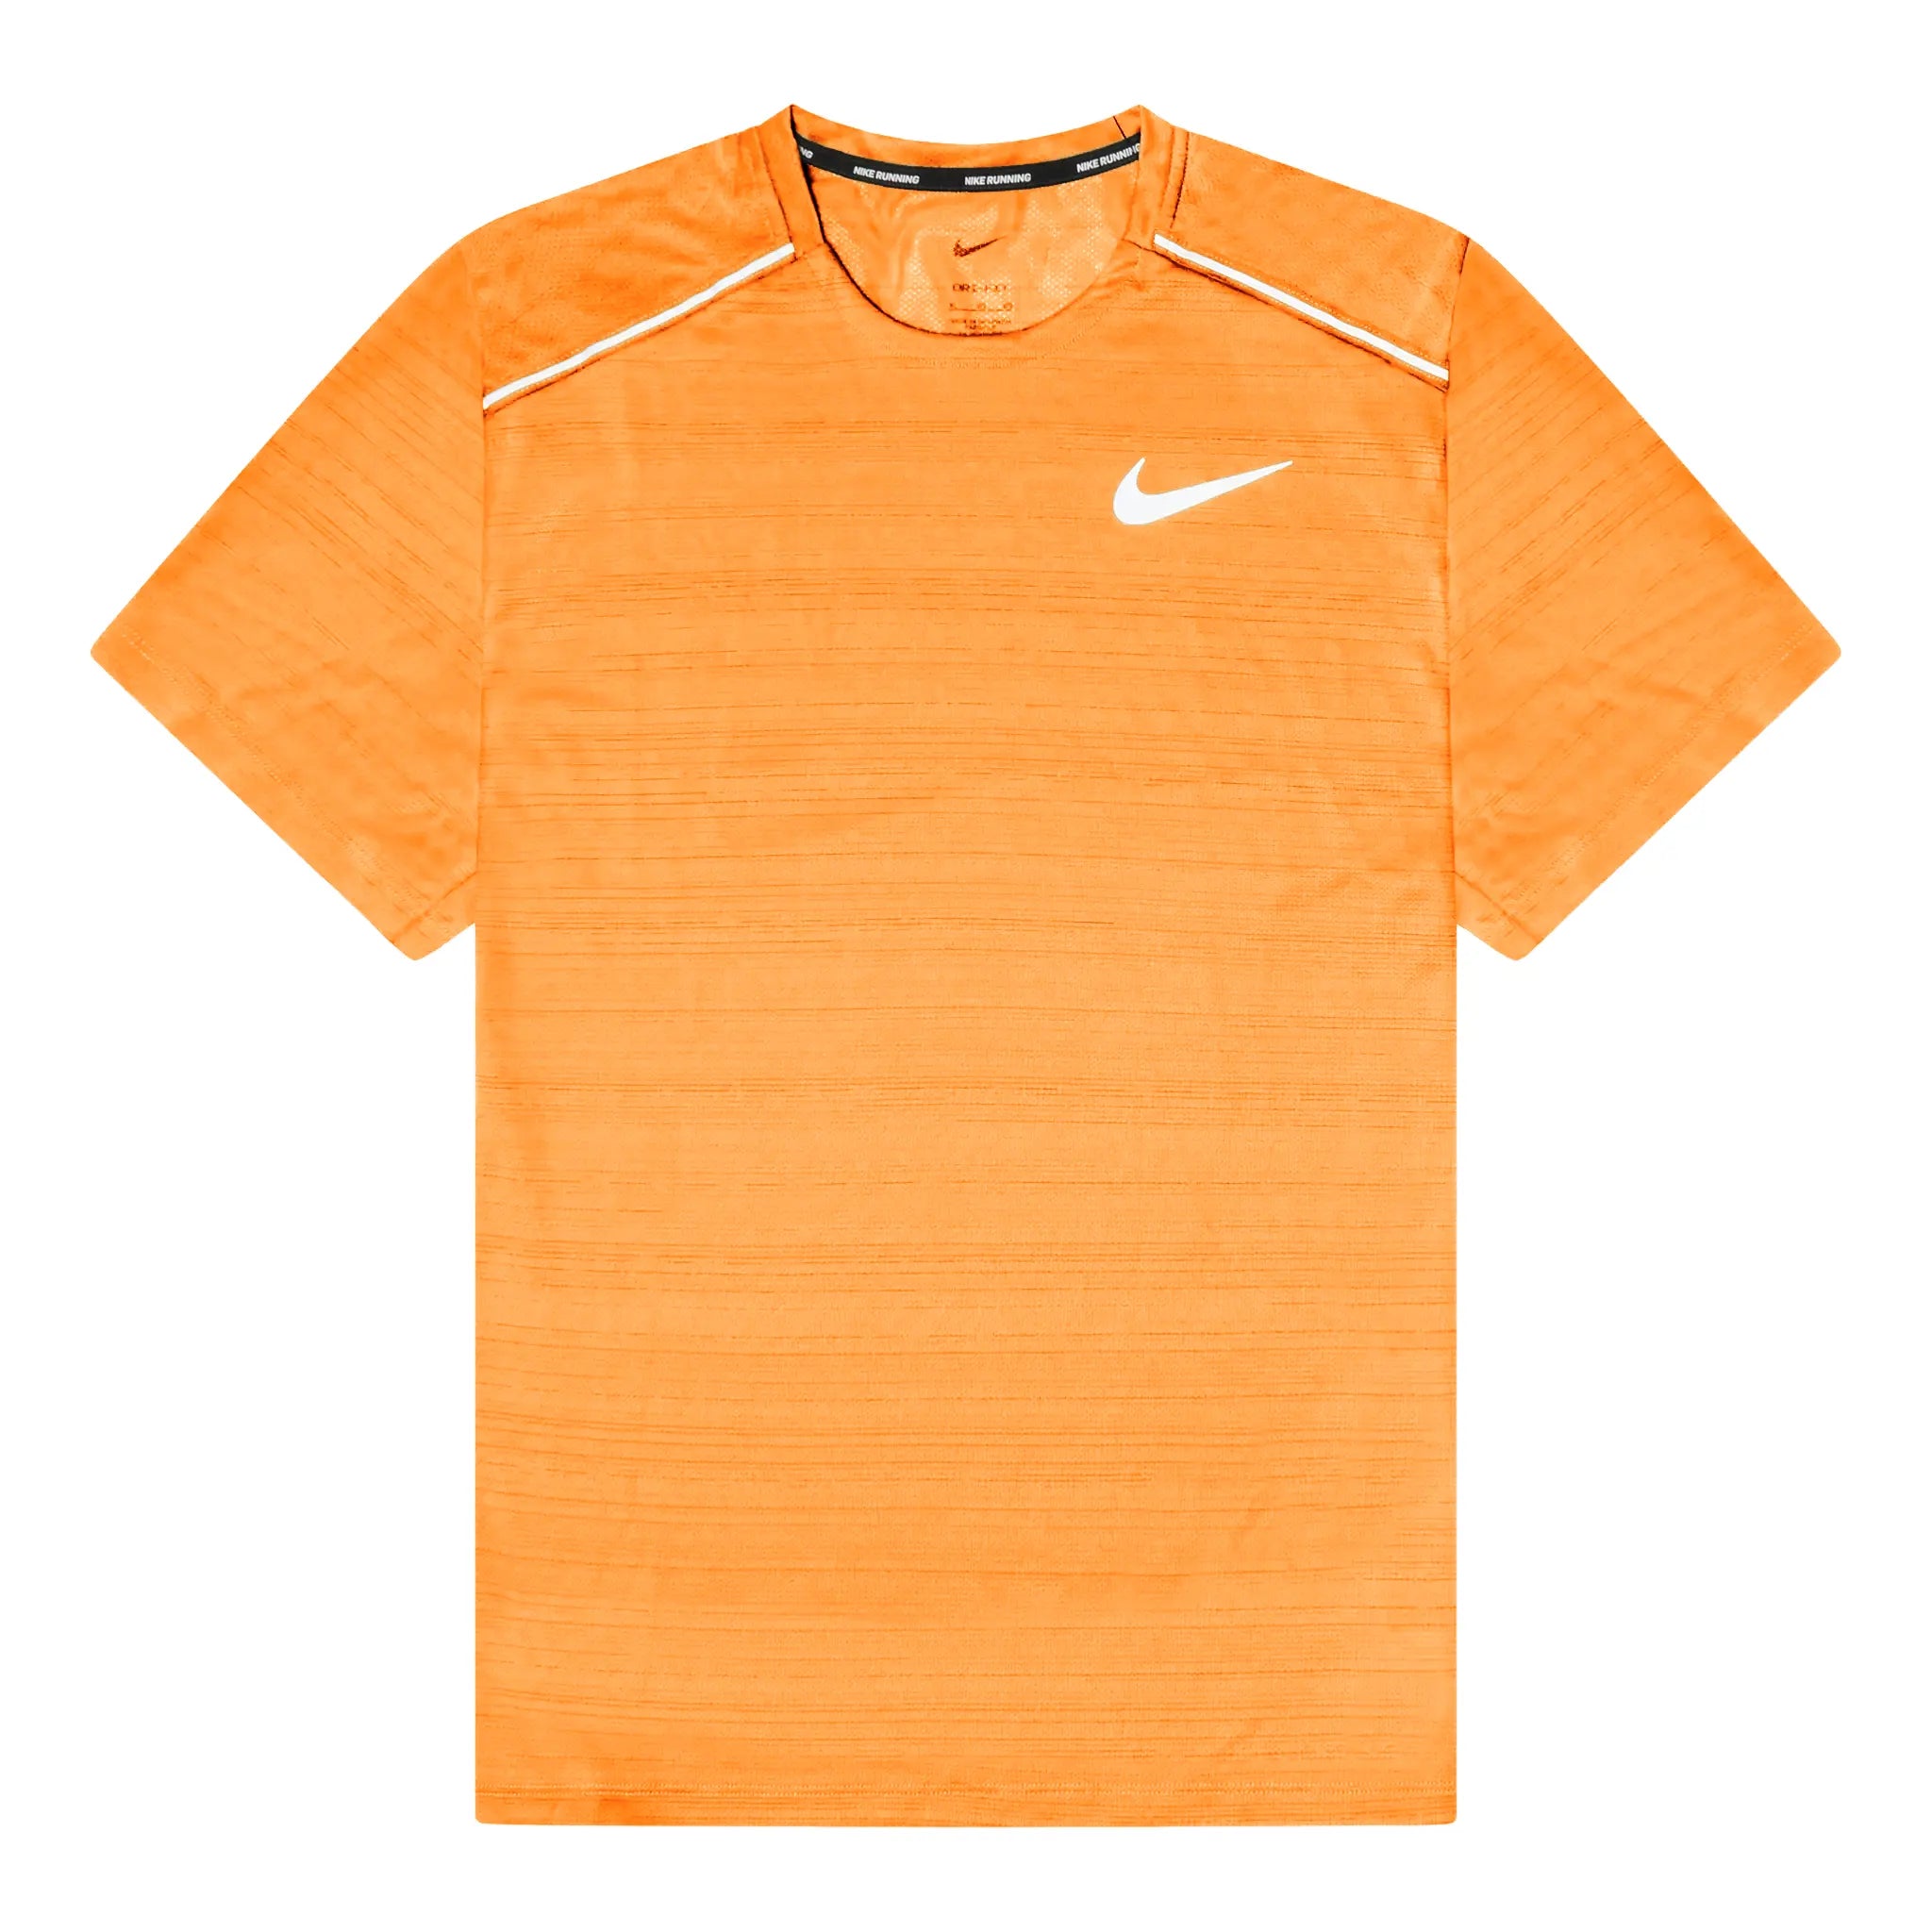 Front view of Nike Dri-FIT 1.0 Orange Miler Running T Shirt AJ7565-871